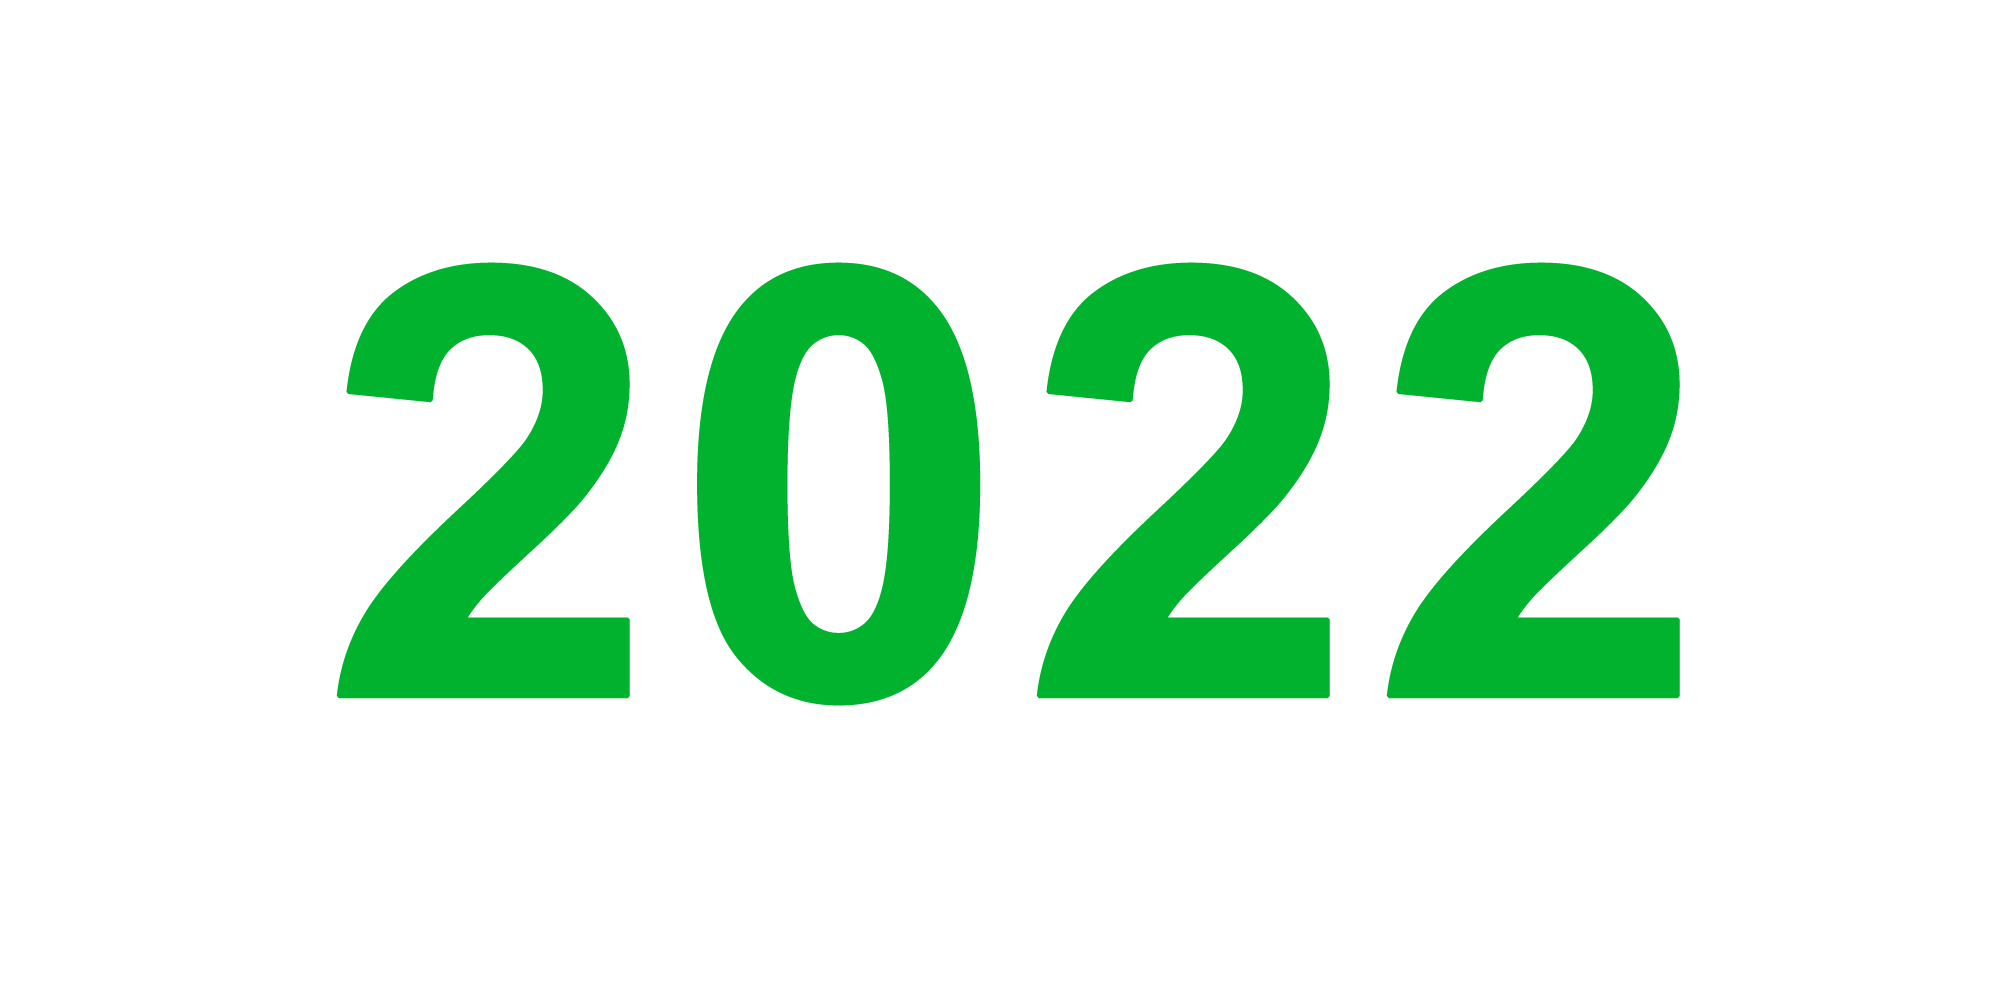 ปี 2022